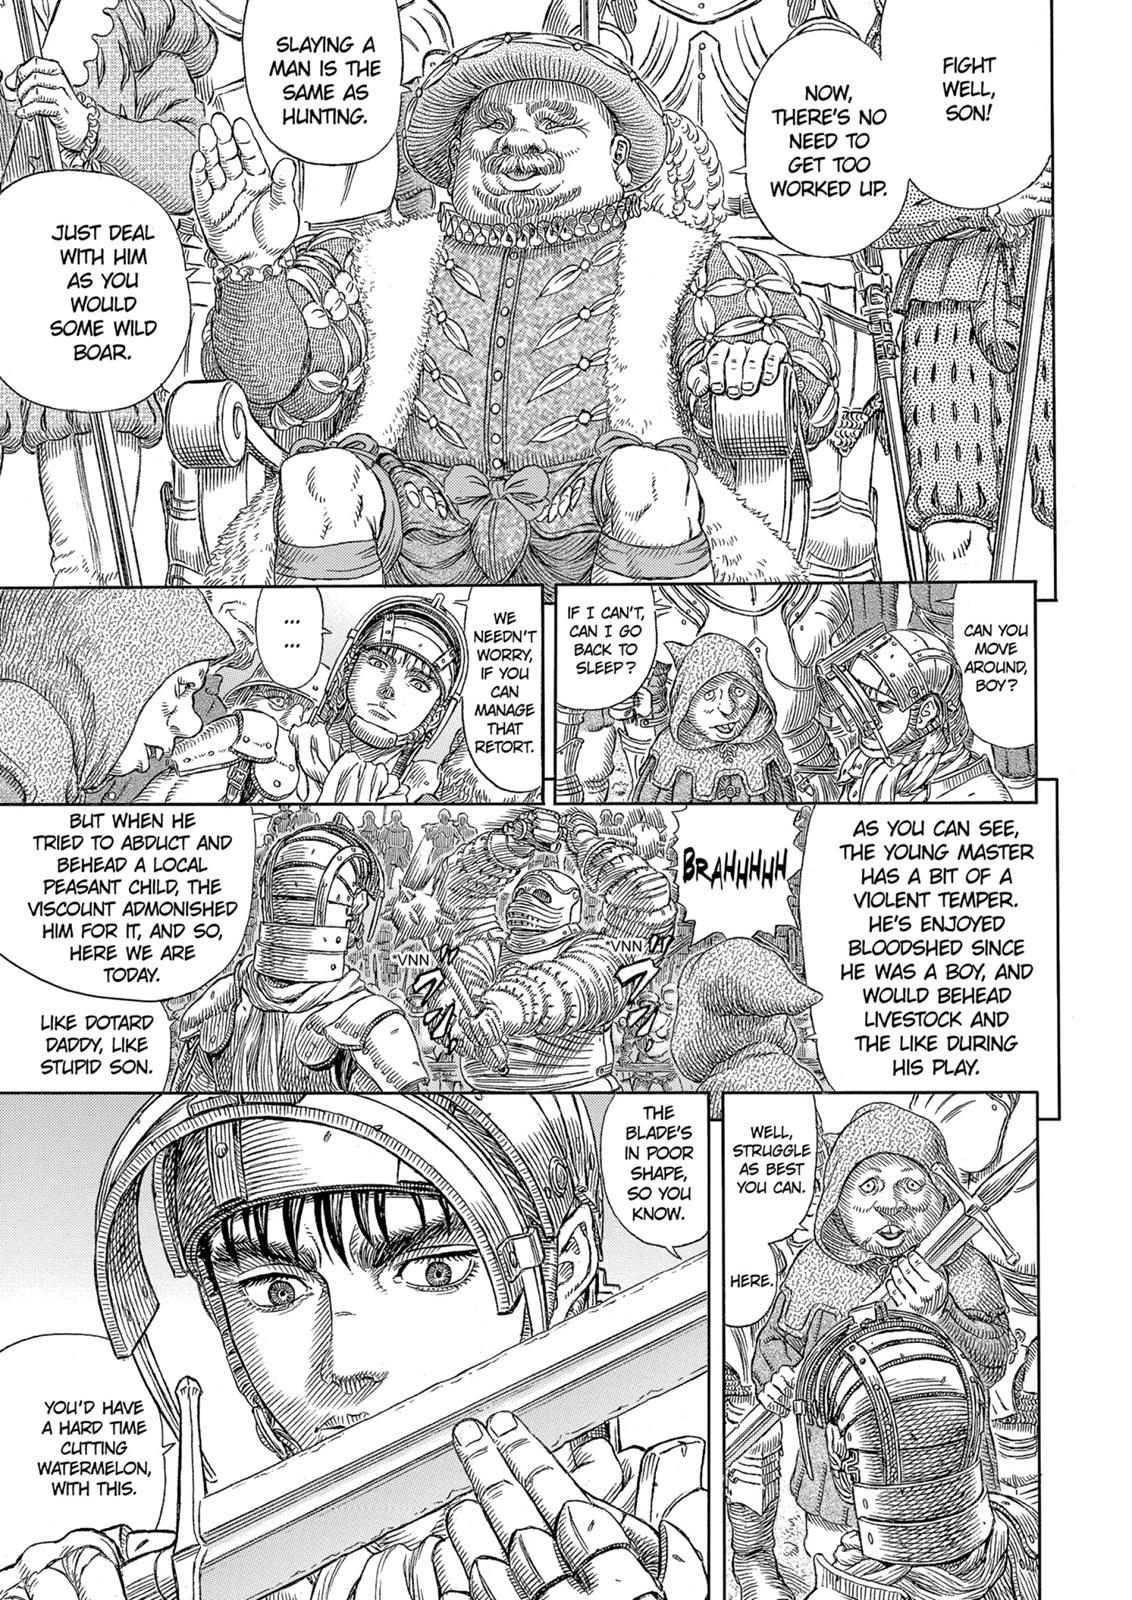 Berserk Manga Chapter 331 image 04